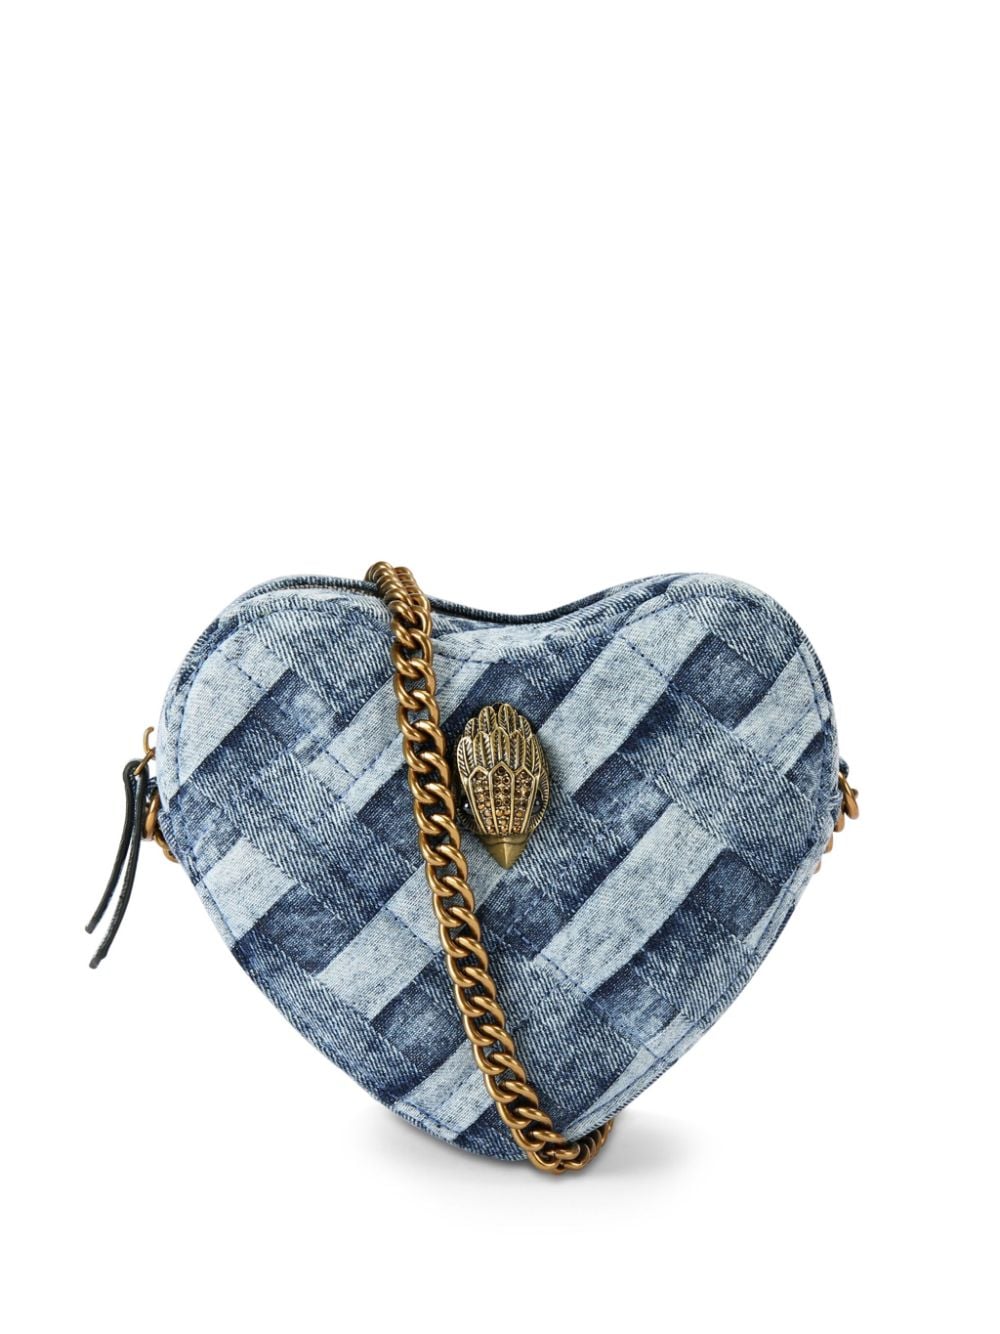 Kensington Heart crossbody bag